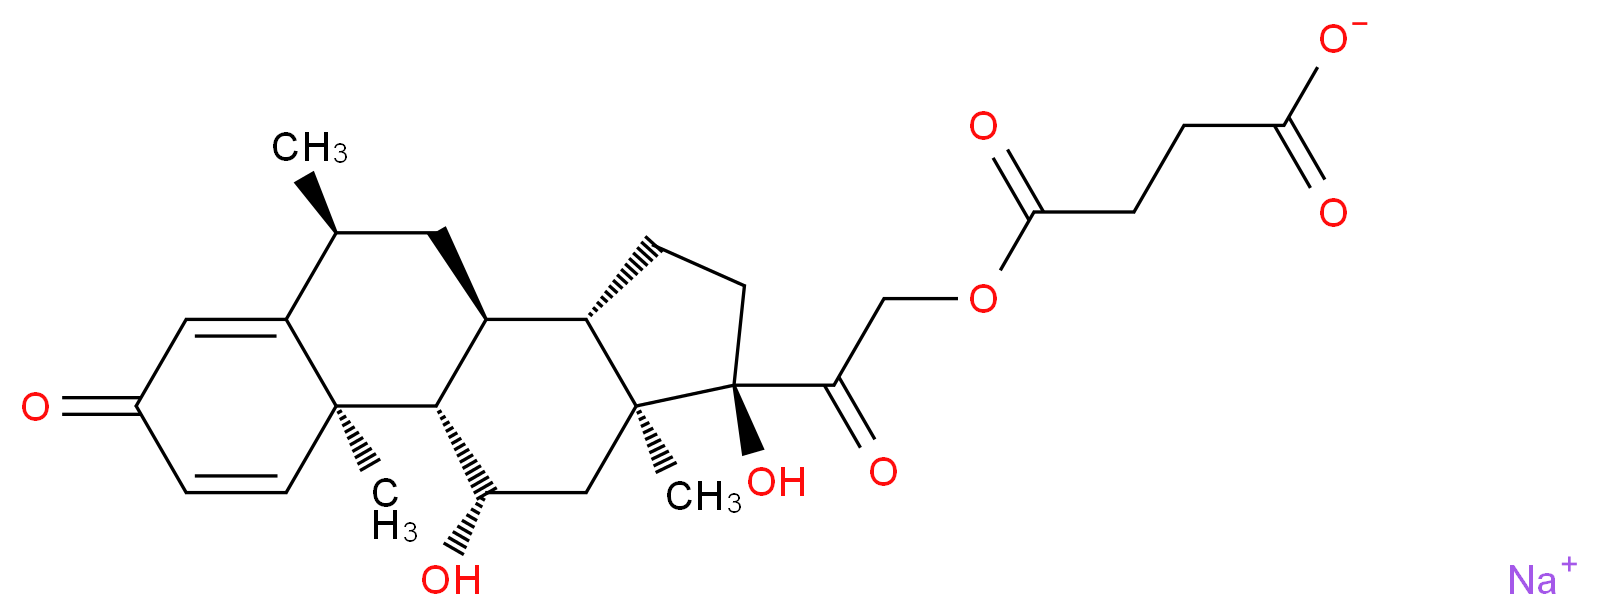 2375-03-3 molecular structure